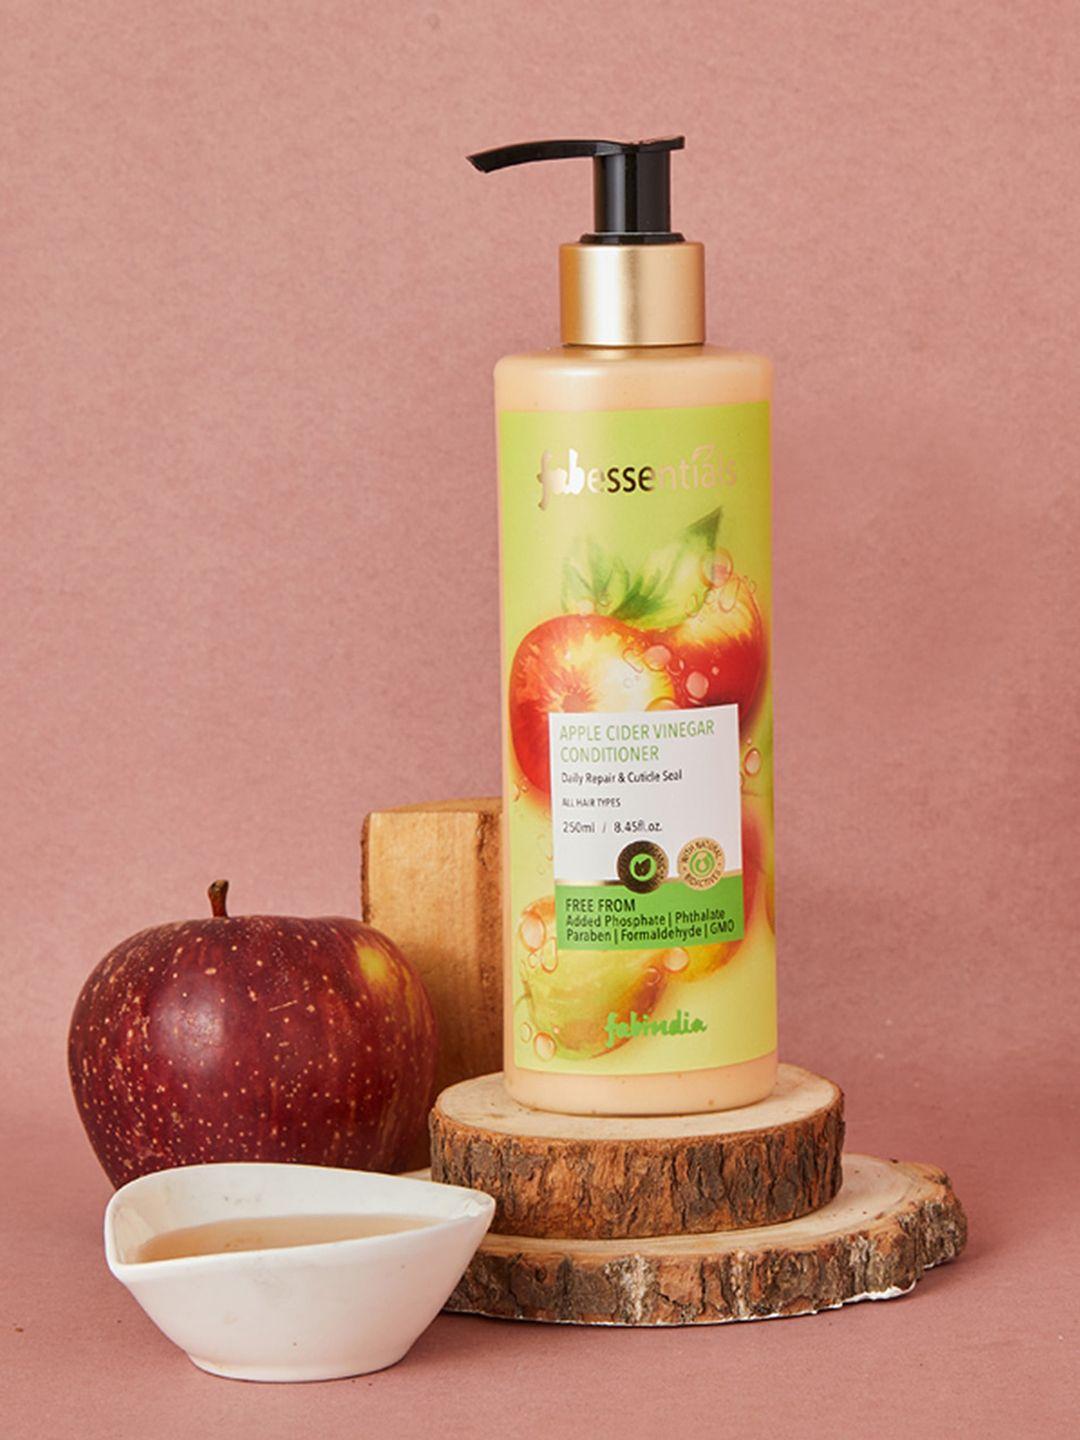 fabindia apple cider vinegar conditioner - 250ml